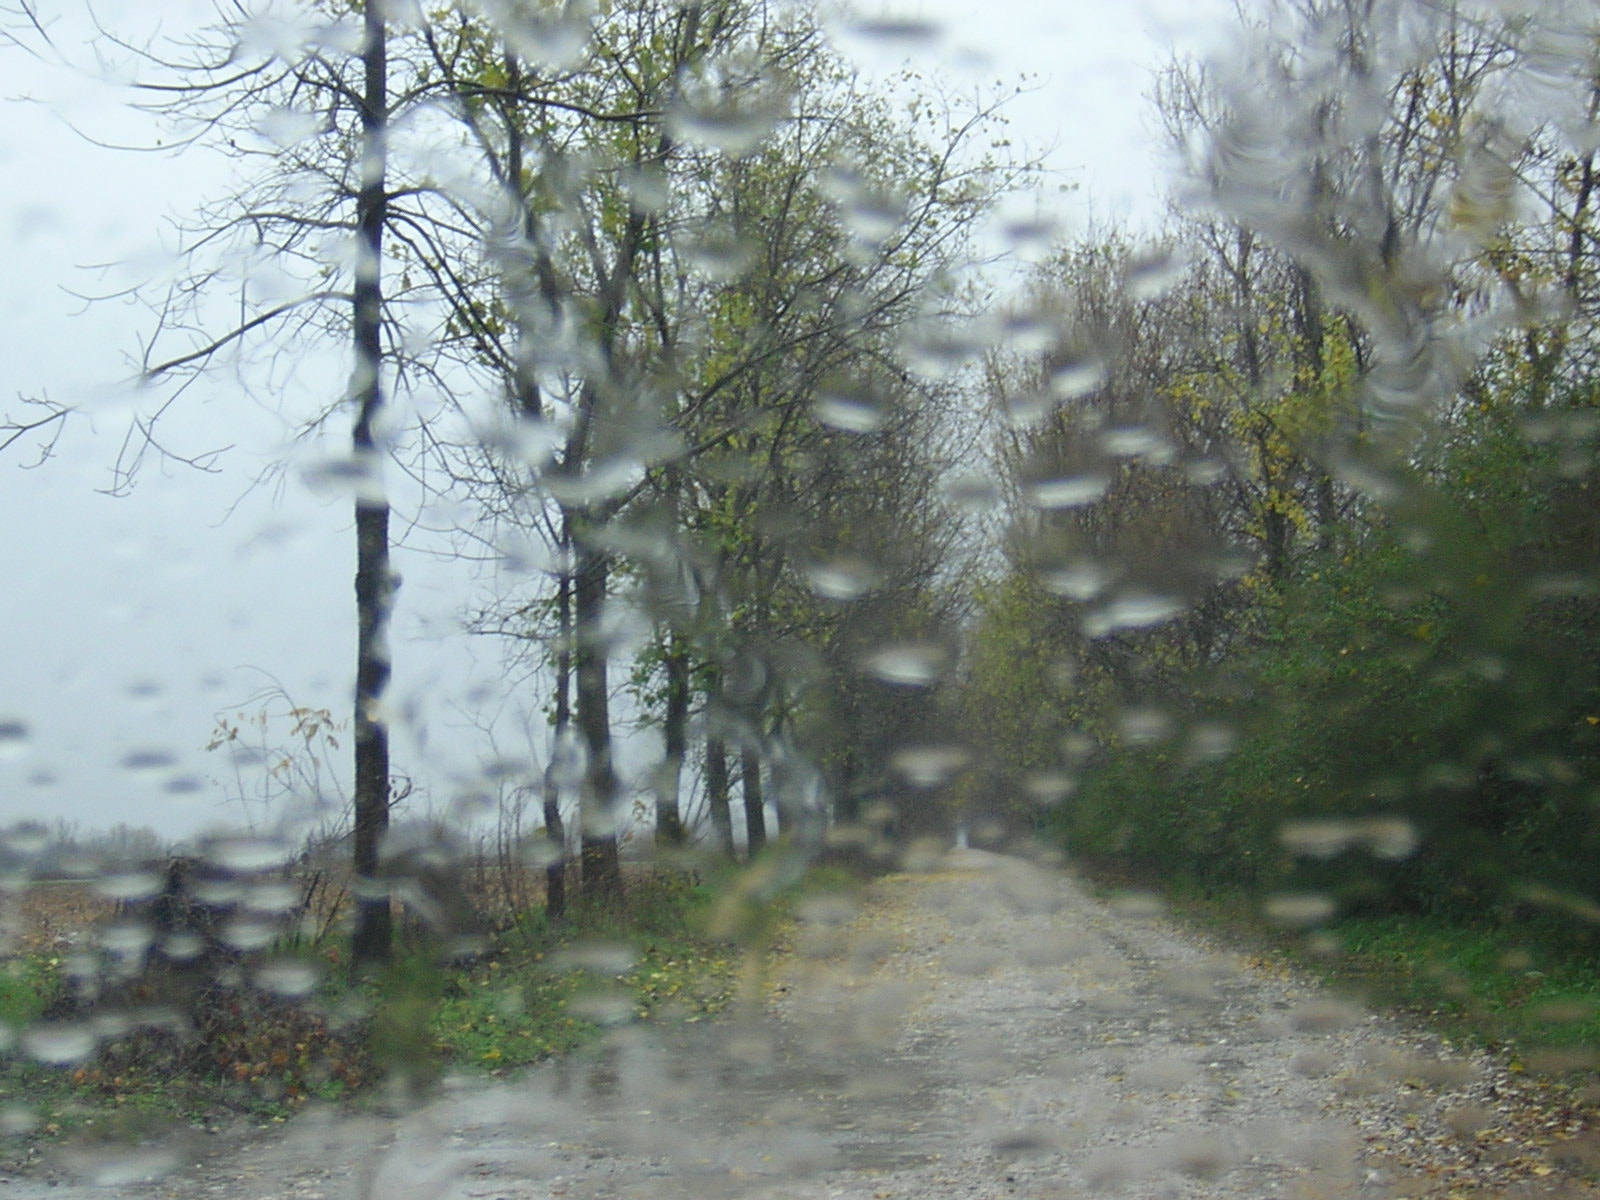 Nikon E2100 sample photo. Rainy day photography